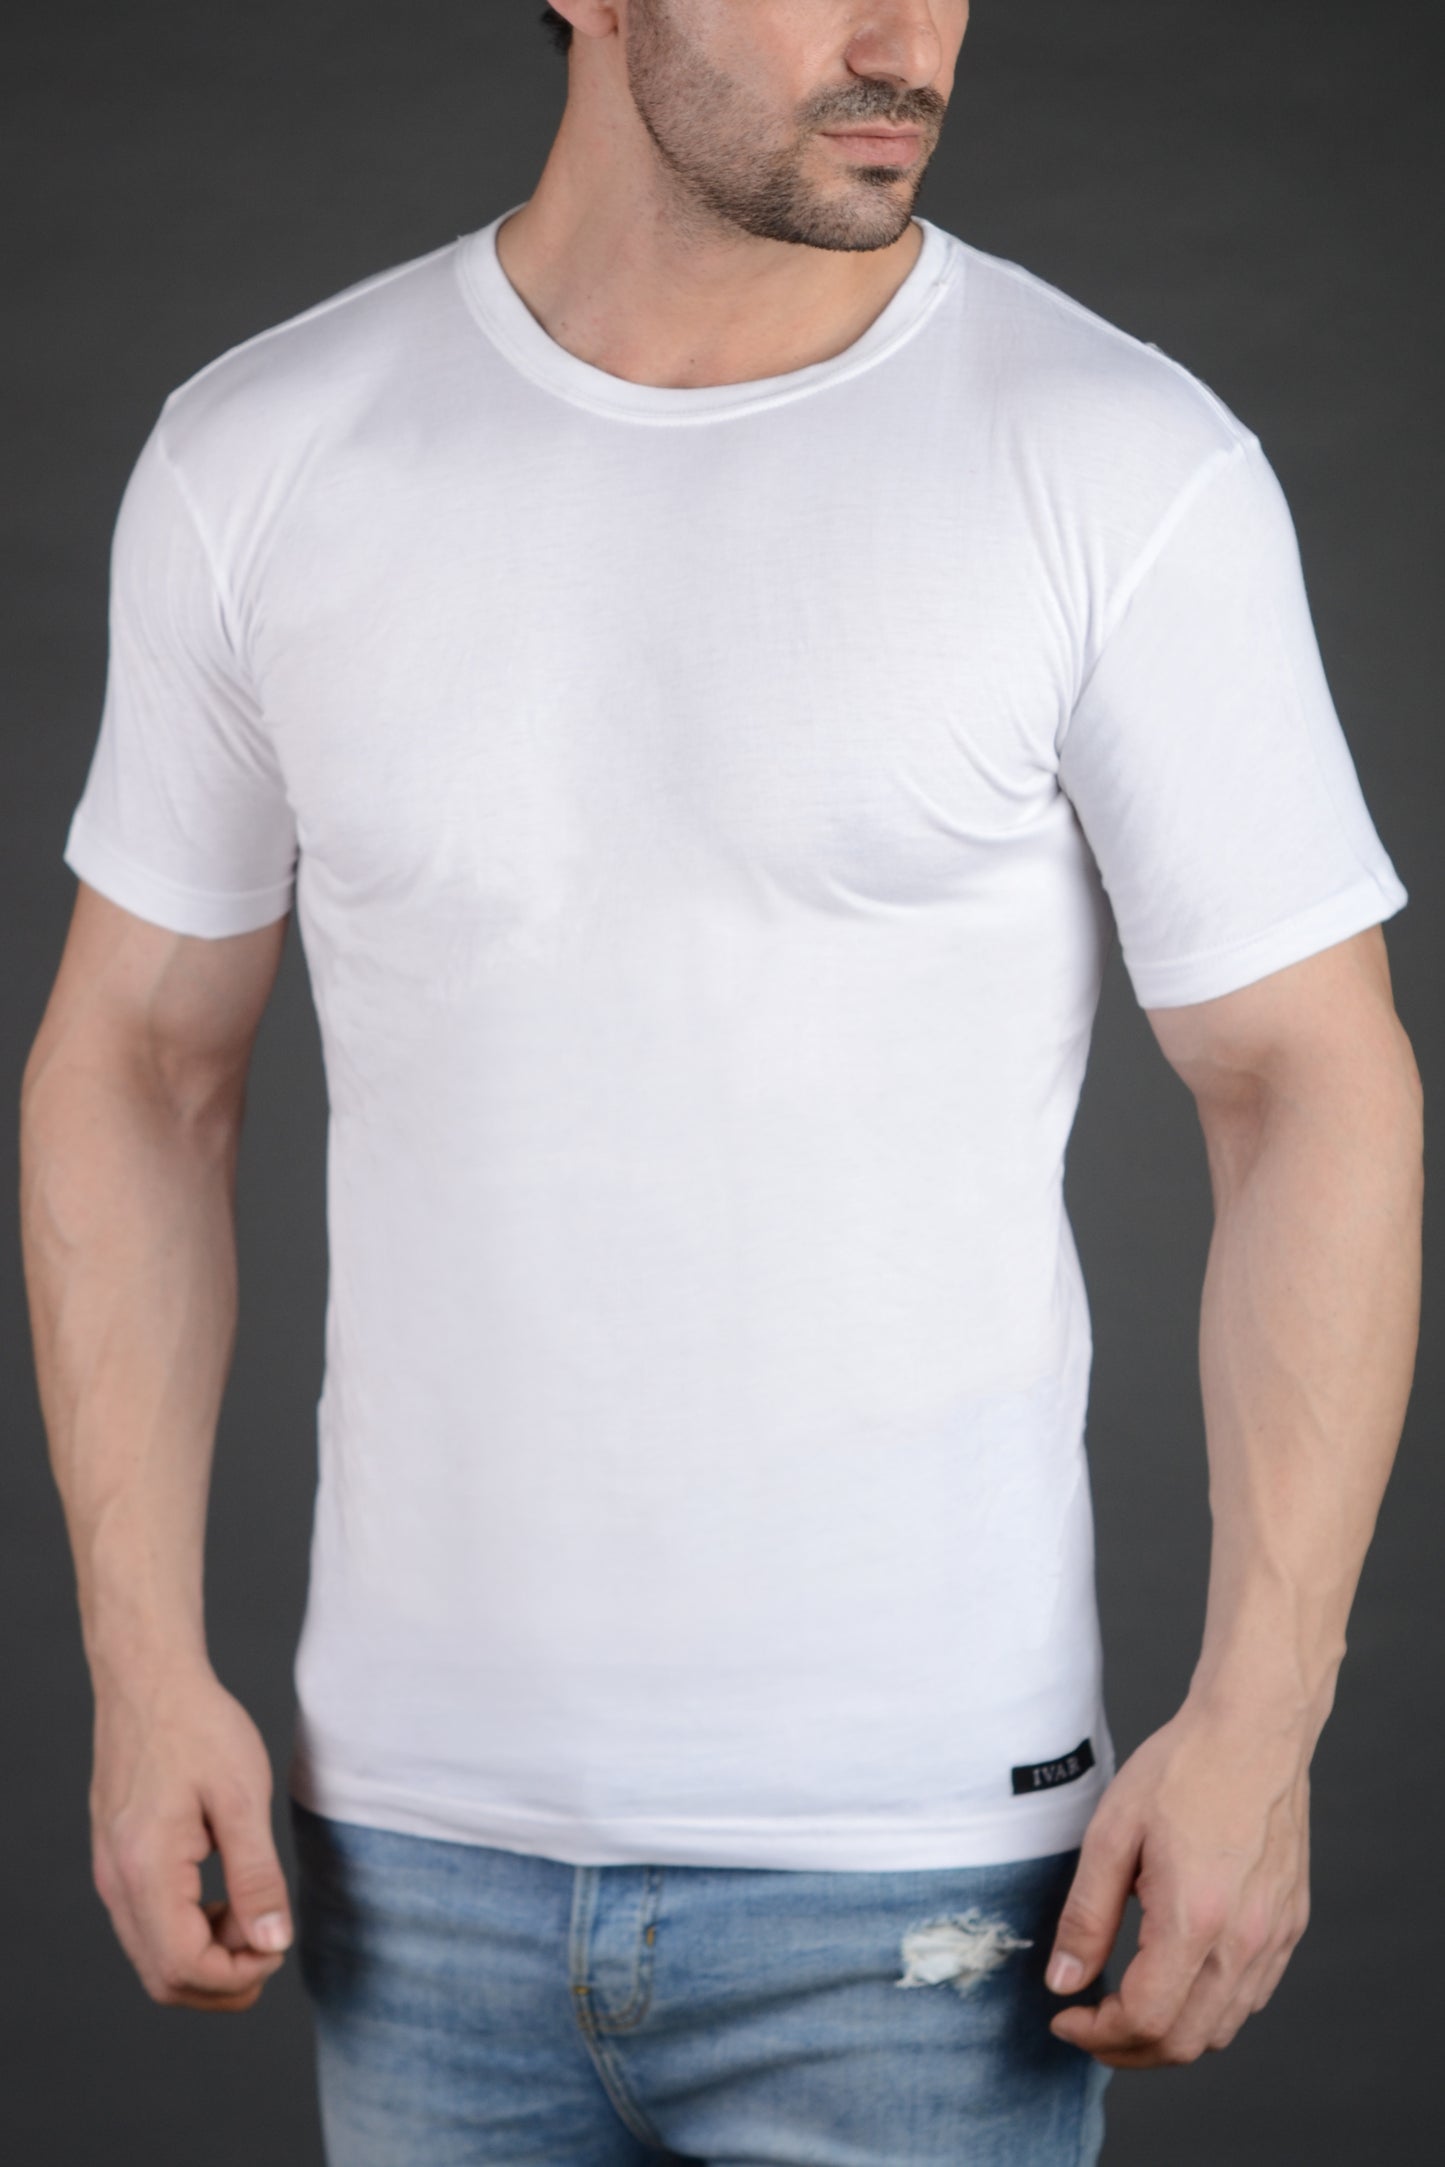 White Crew Neck inner Vest (100% Combed Cotton)